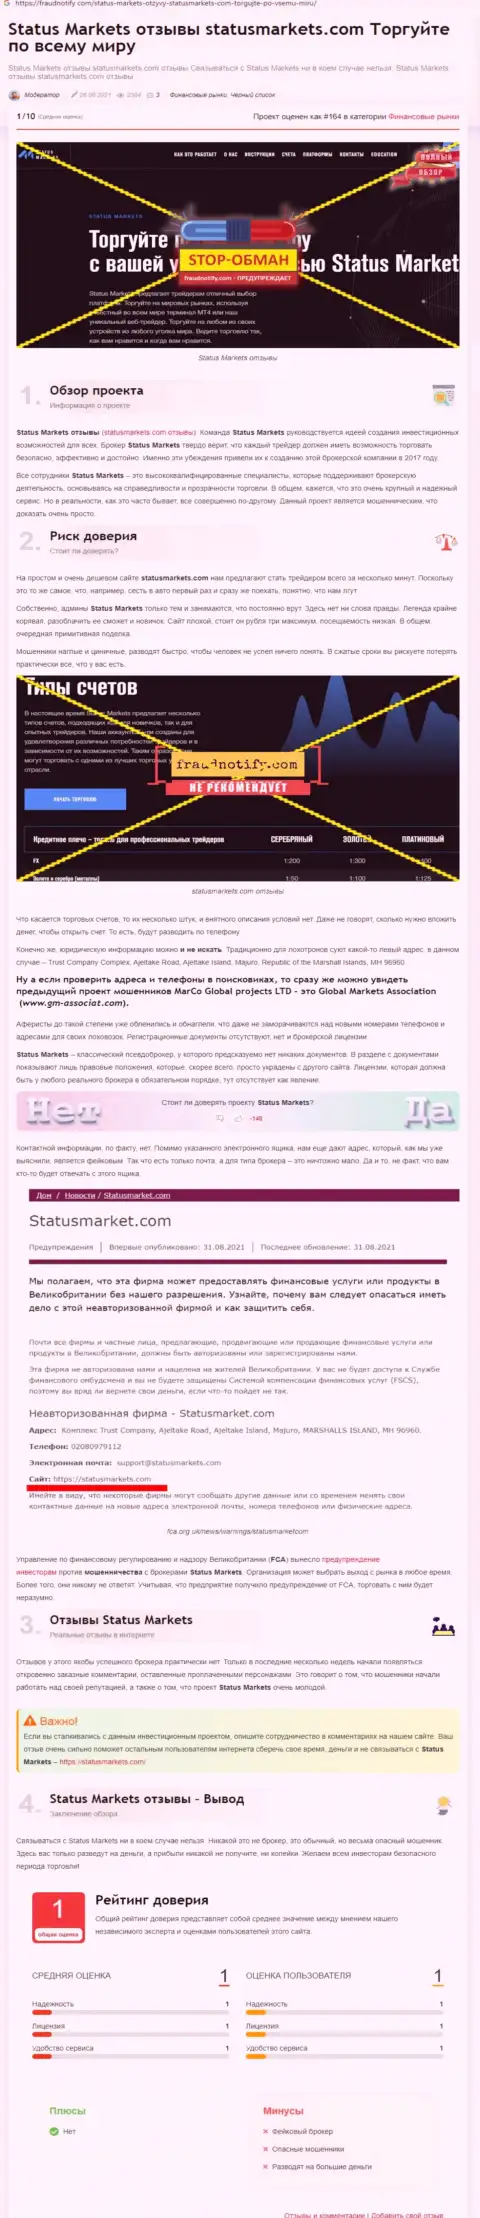 В конторе StatusMarkets Com лохотронят - факты противозаконных действий (обзор компании)